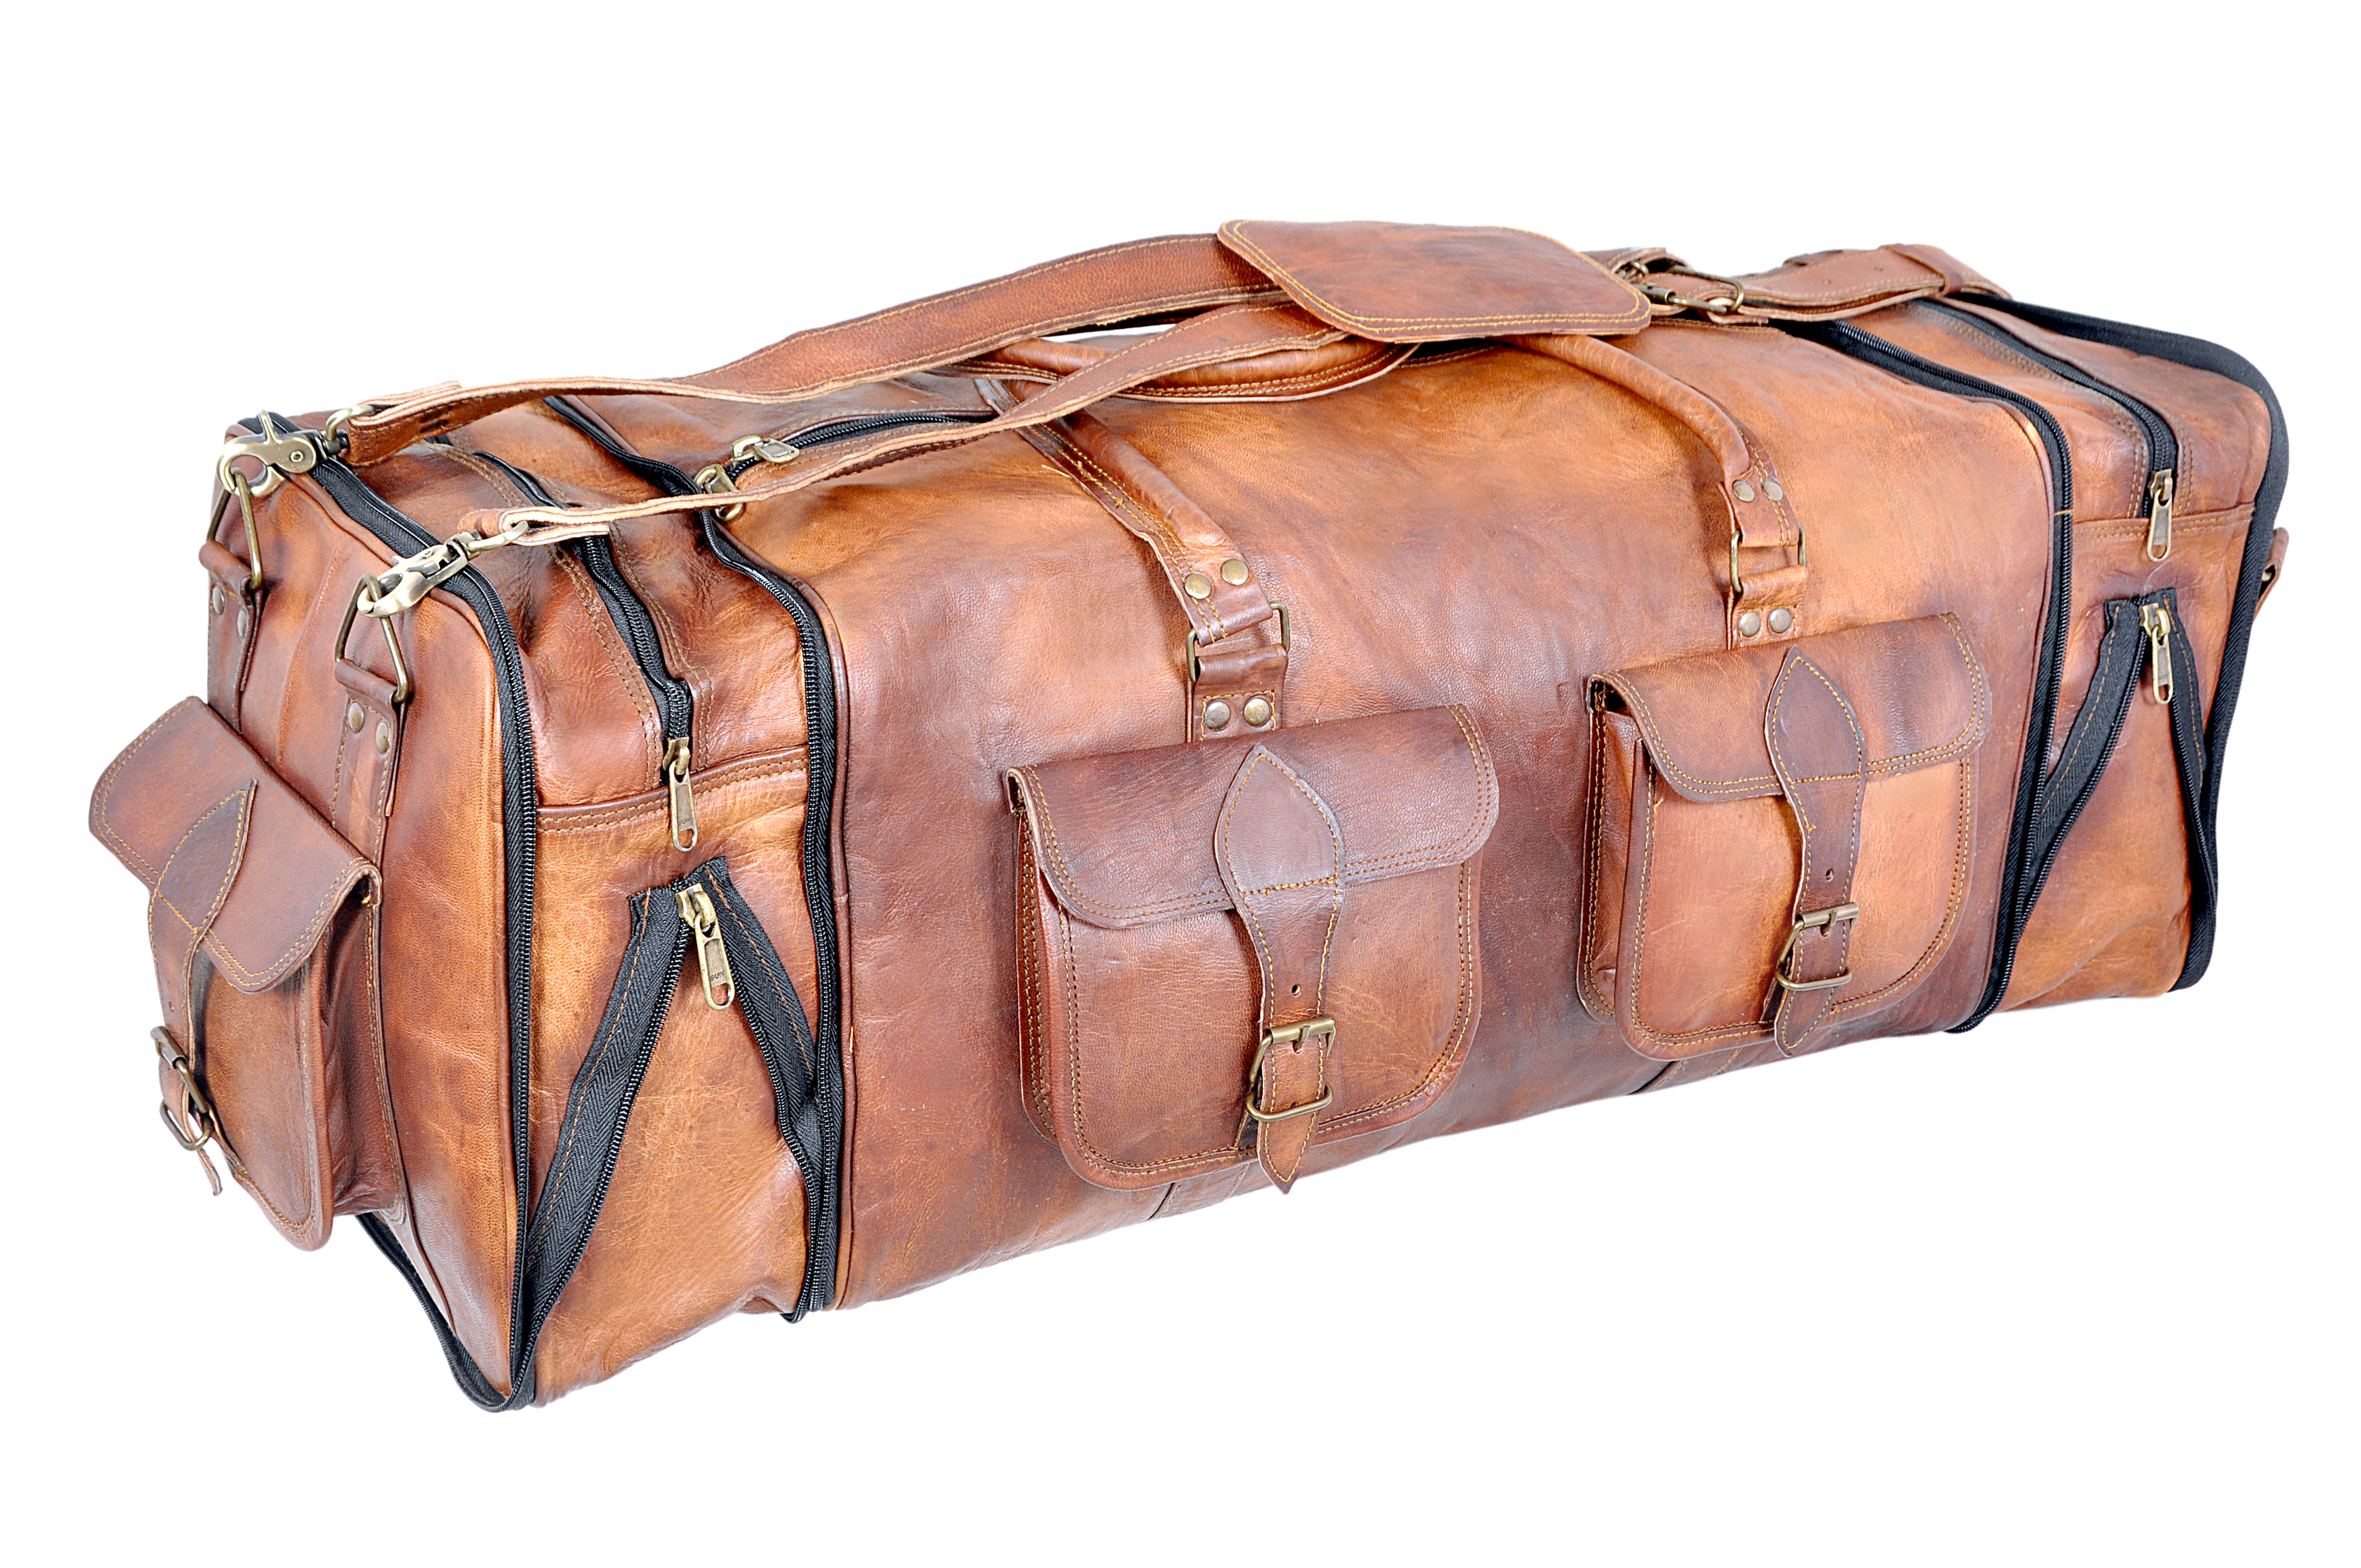 New Mens 30" Vintage Leather Luggage Genuine Brown Duffel Weekend Gym Travel Bag